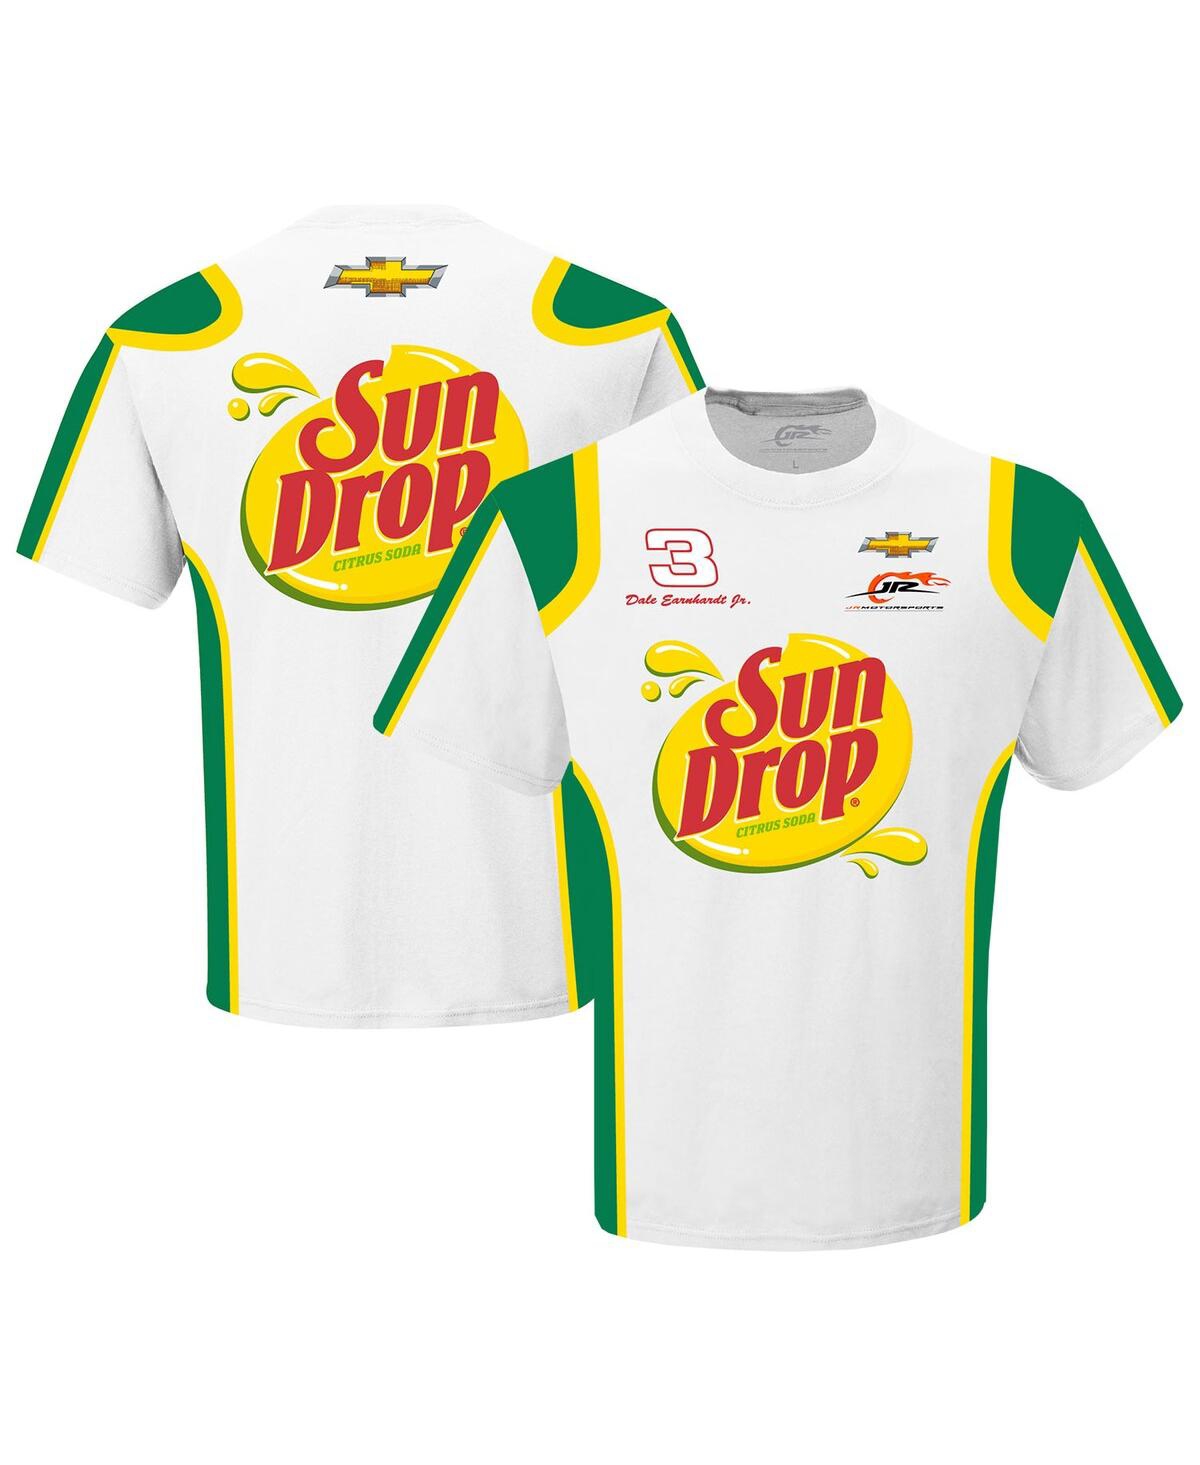 Men's Jr Motorsports Official Team Apparel White Dale Earnhardt Jr. Sun Drop Uniform T-shirt - White